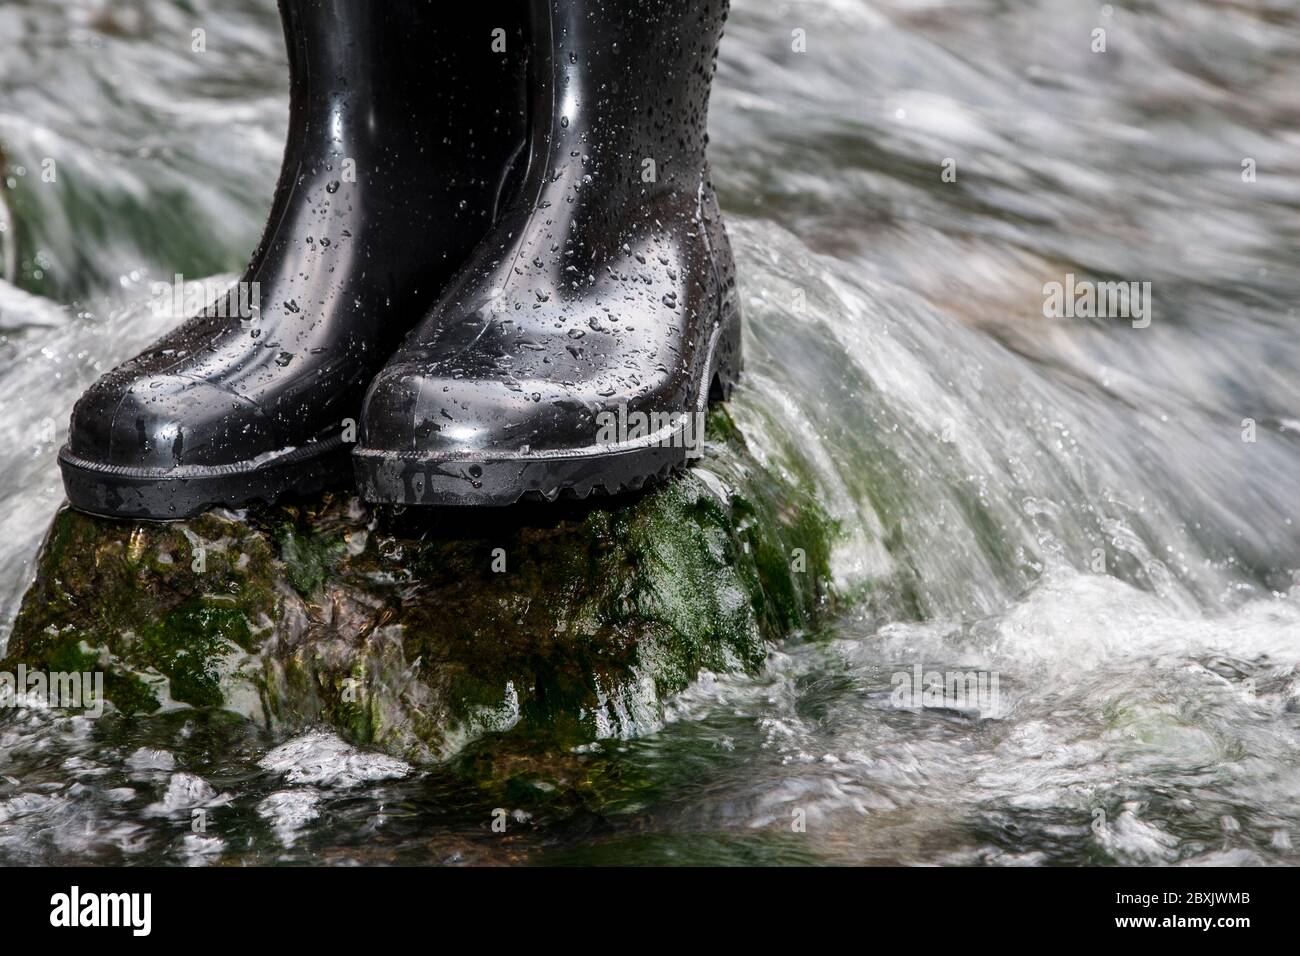 Zwei nassbesprühte Gummistiefel stehen auf einem Stein im rauschenden Wasser eines Baches. Gummistiefel halten deine Füße auch in nassem Gelände trocken. Stockfoto